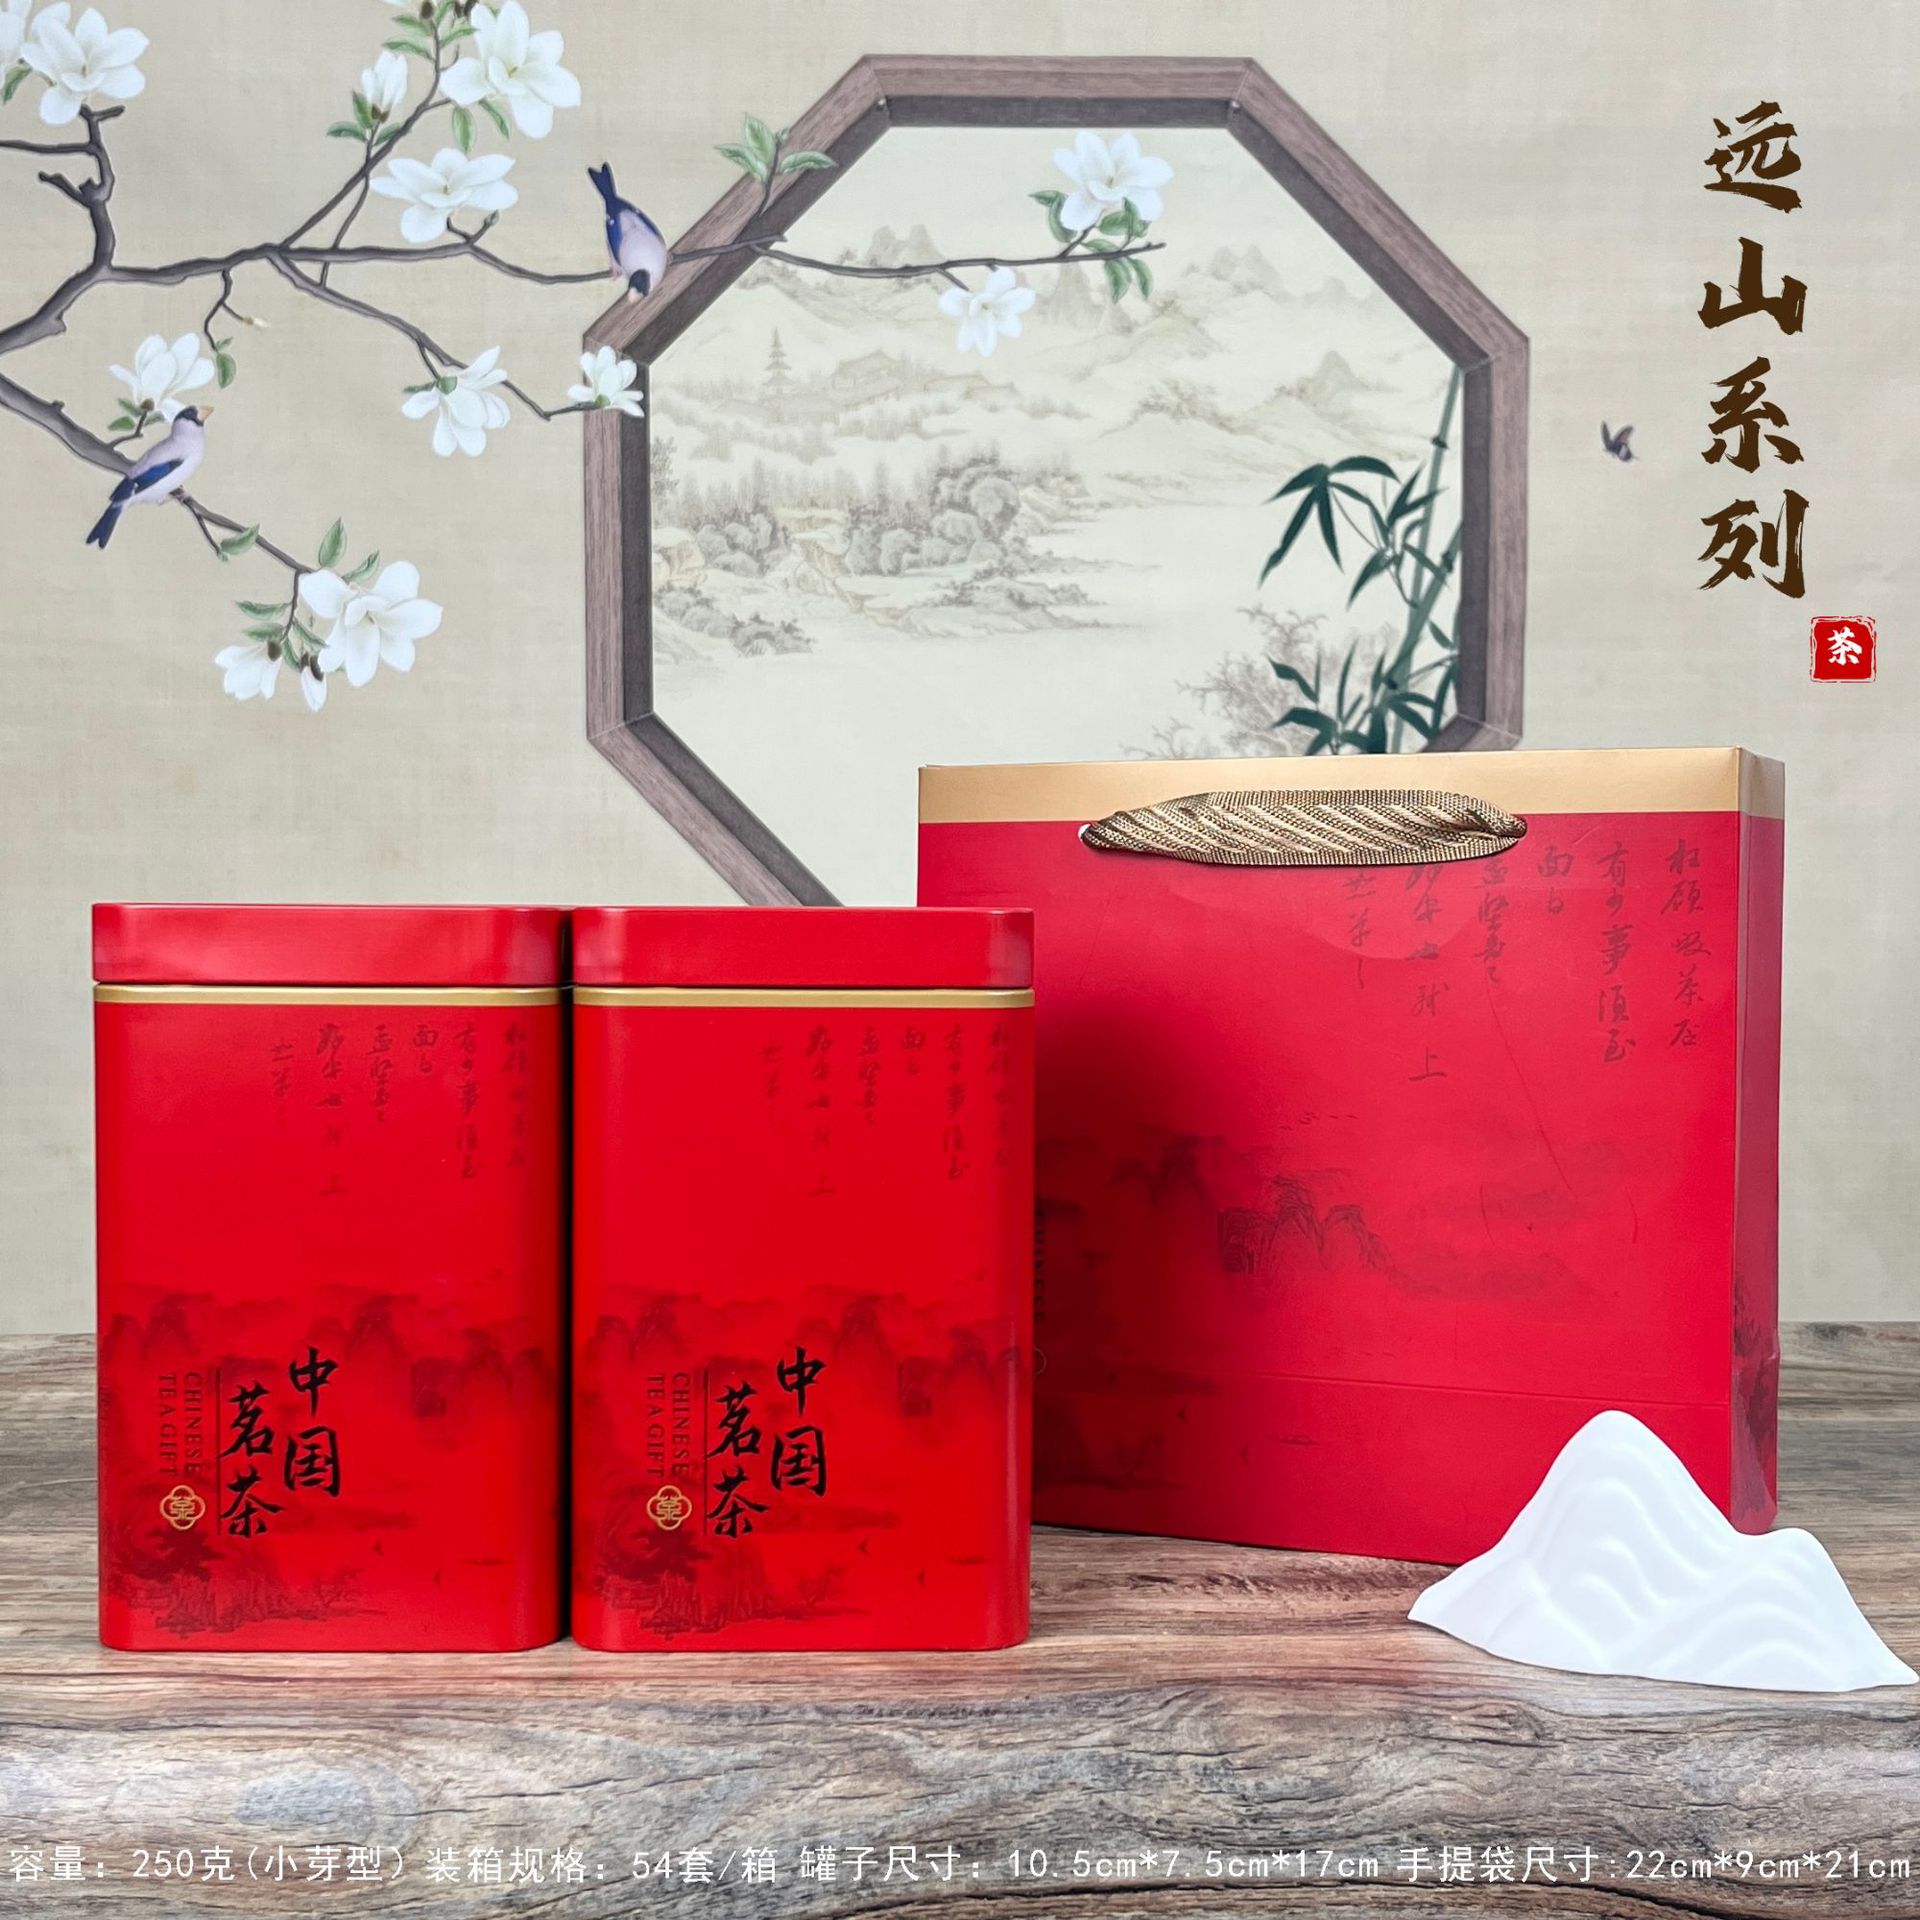 远山系列茶叶方型新款中国茗茶金骏眉铁观音红茶半斤1斤铁盒